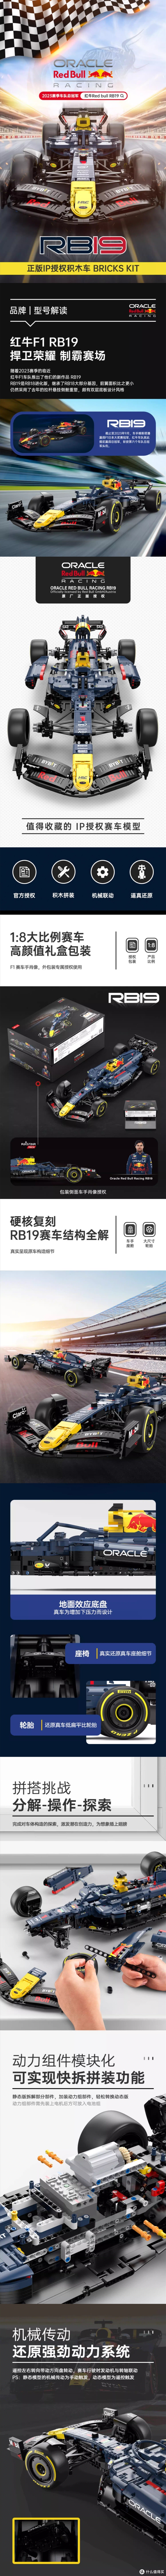 星辉威武，推出红牛车队授权1:8比例的RB19，F1赛车积木